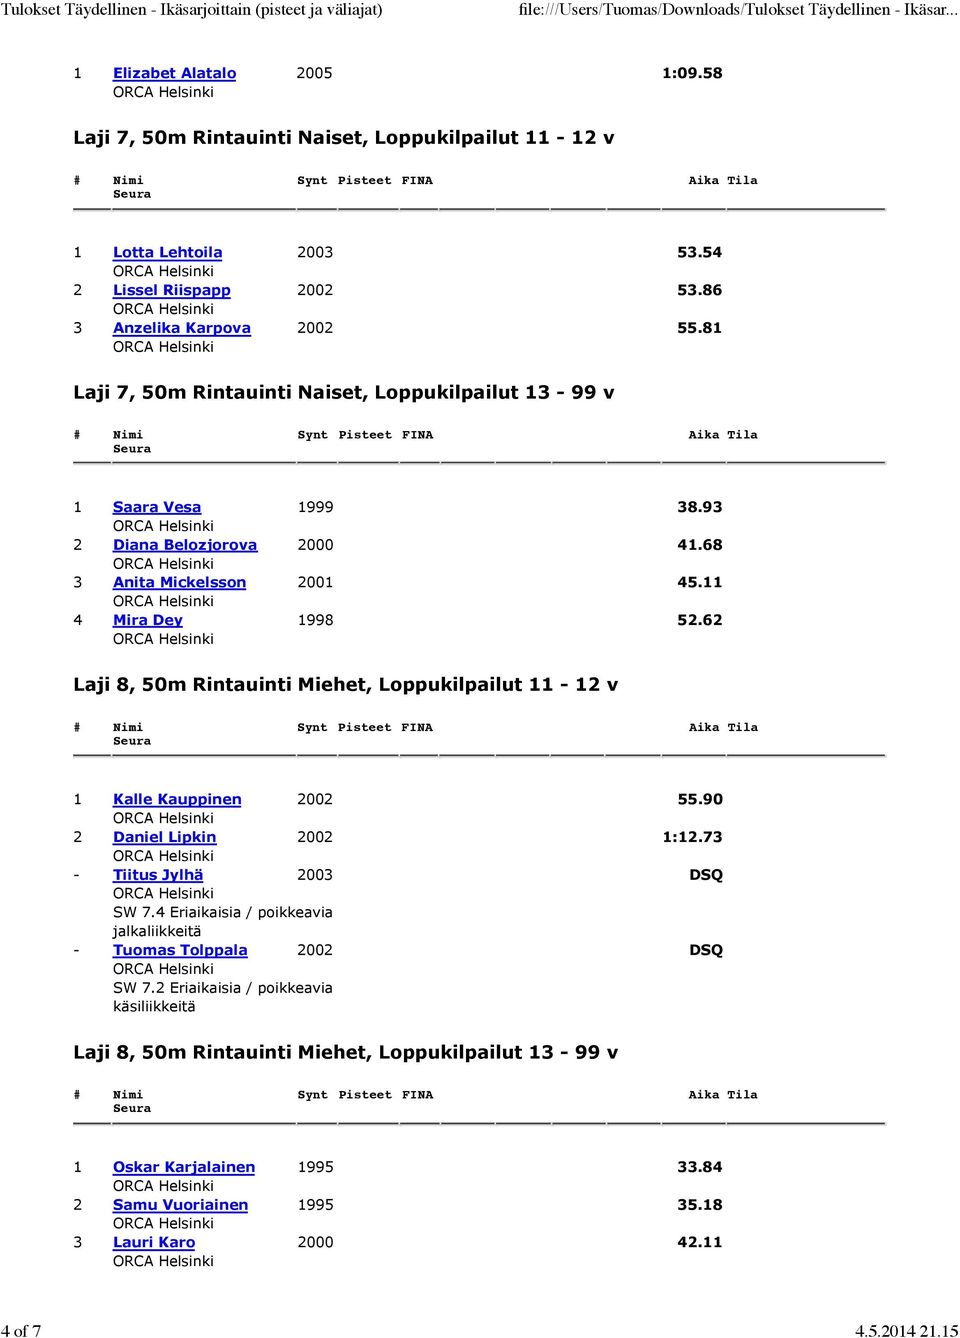 62 Laji 8, 50m Rintauinti Miehet, Loppukilpailut 11-12 v 1 Kalle Kauppinen 2002 55.90 2 Daniel Lipkin 2002 1:12.73 - Tiitus Jylhä 2003 DSQ SW 7.